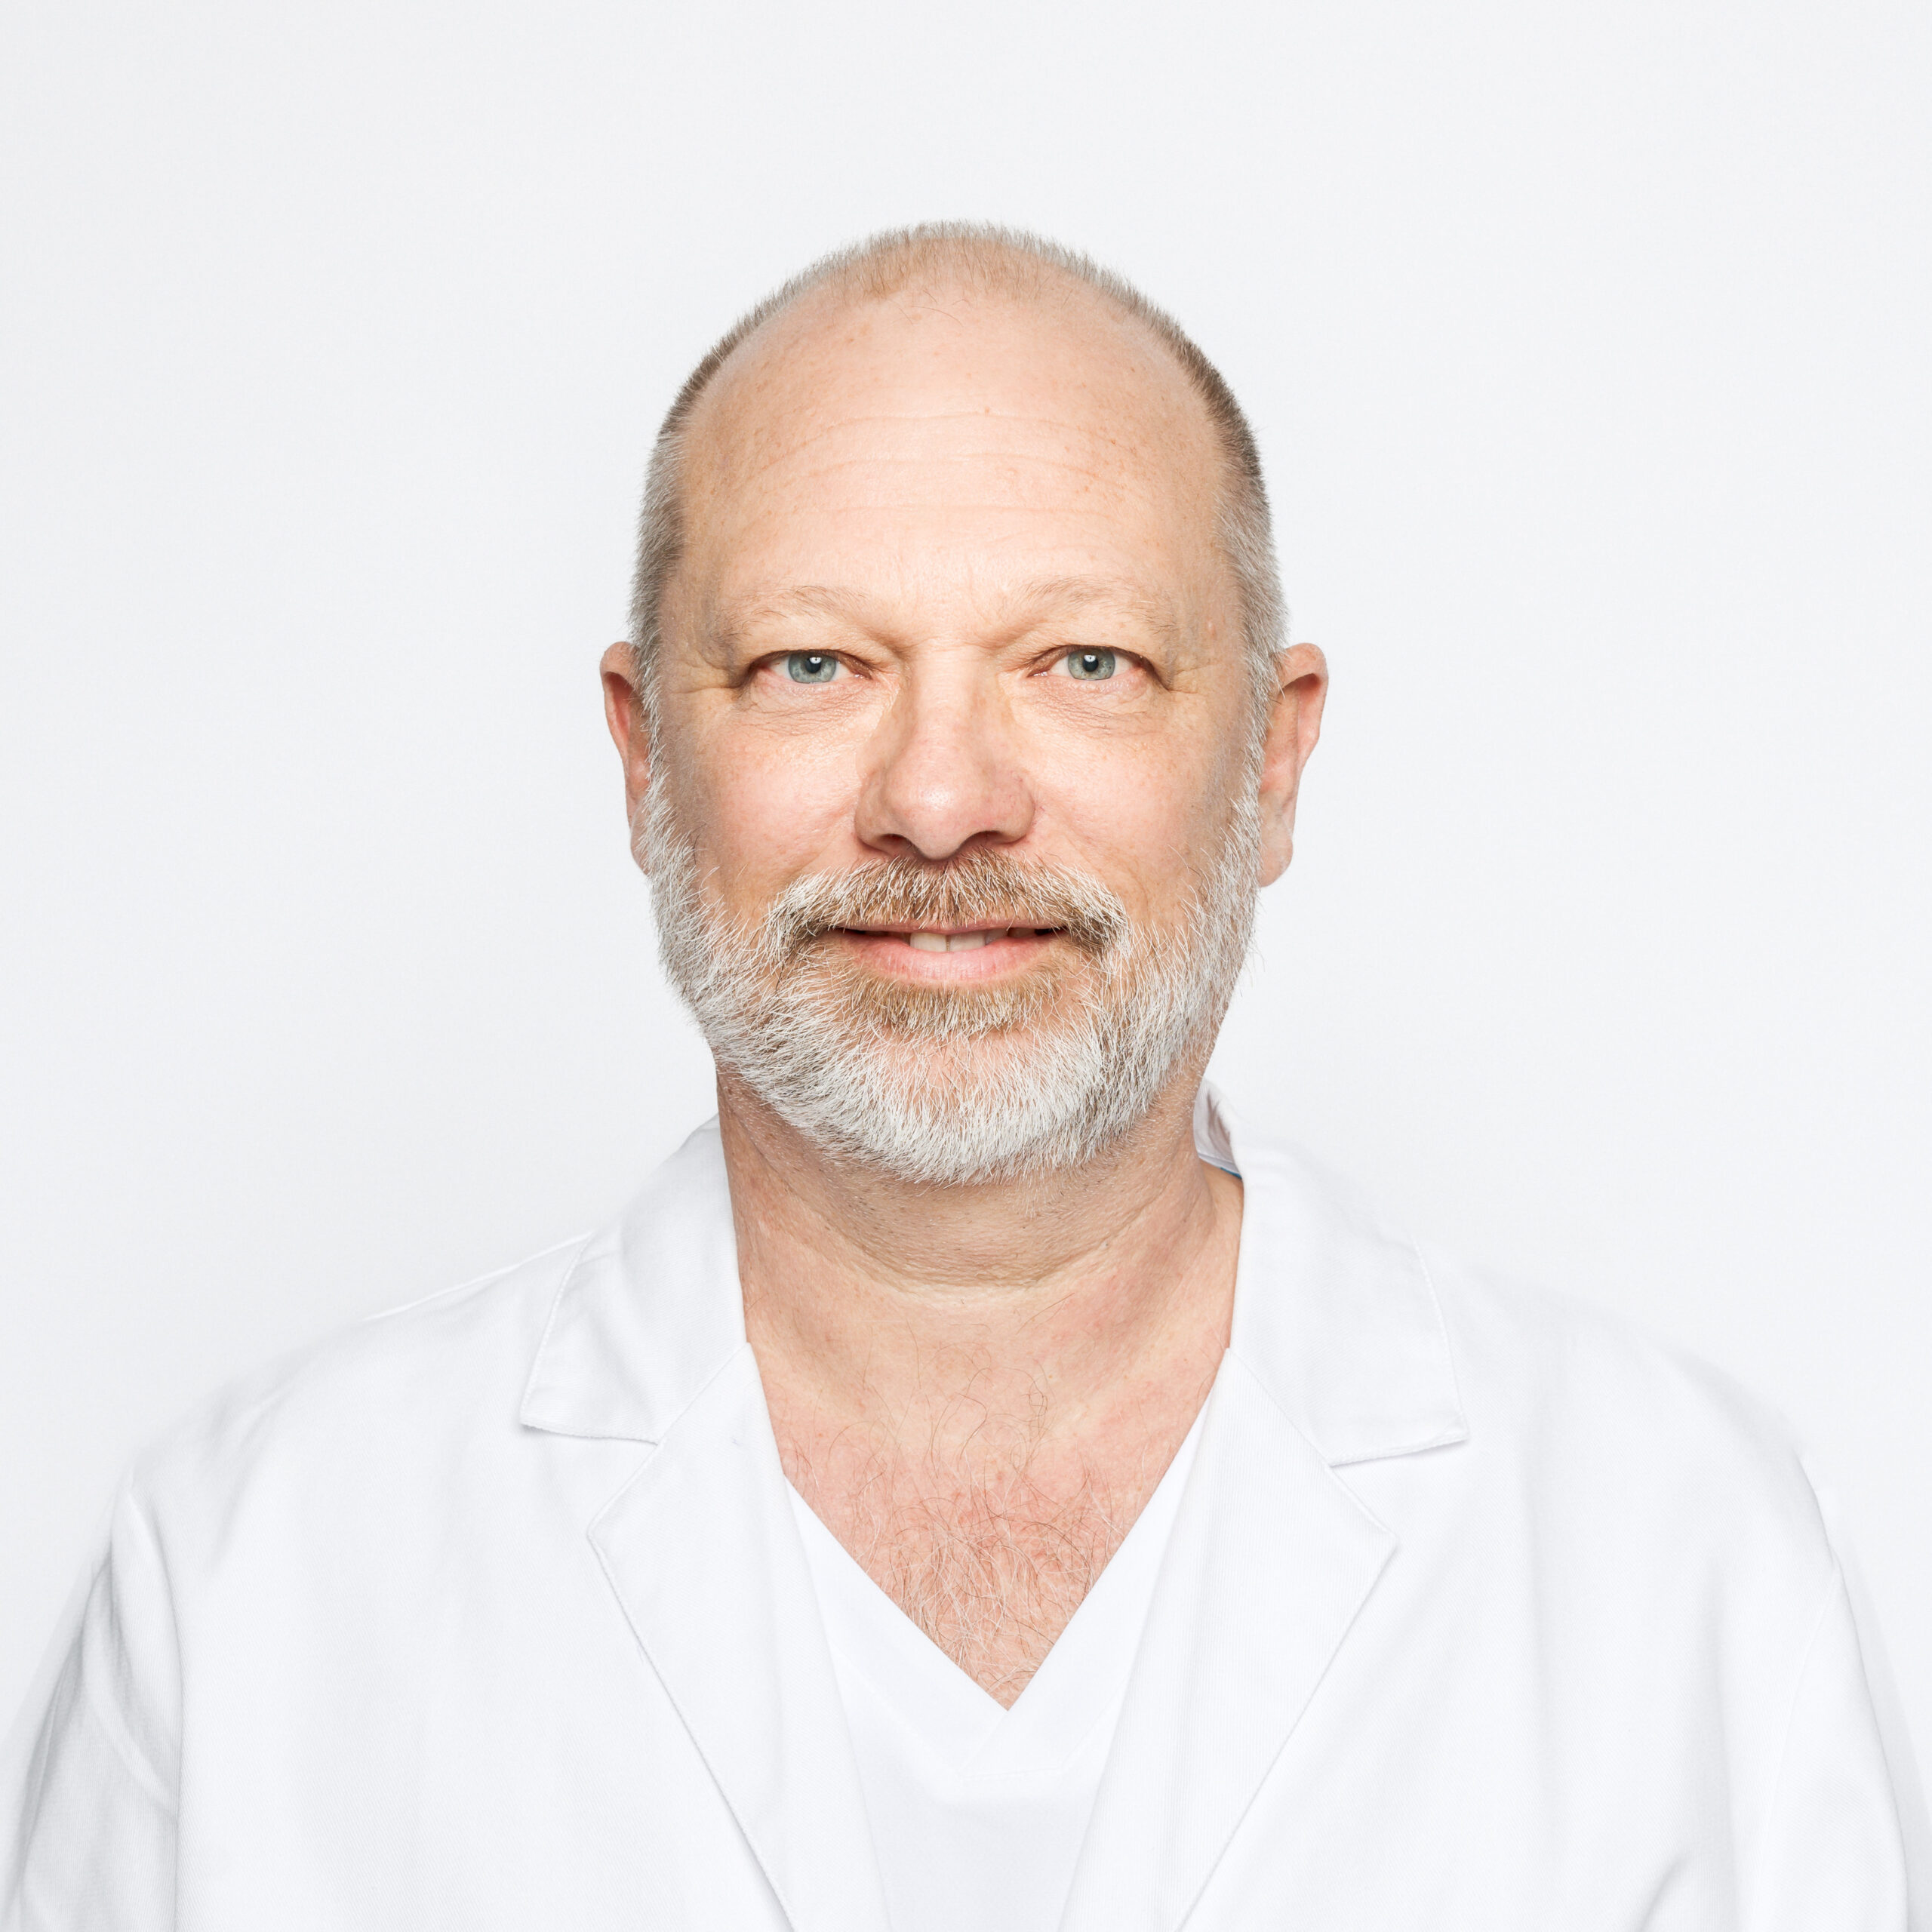 Vasakliniken Allmänläkare Martin Wilde Profilbild